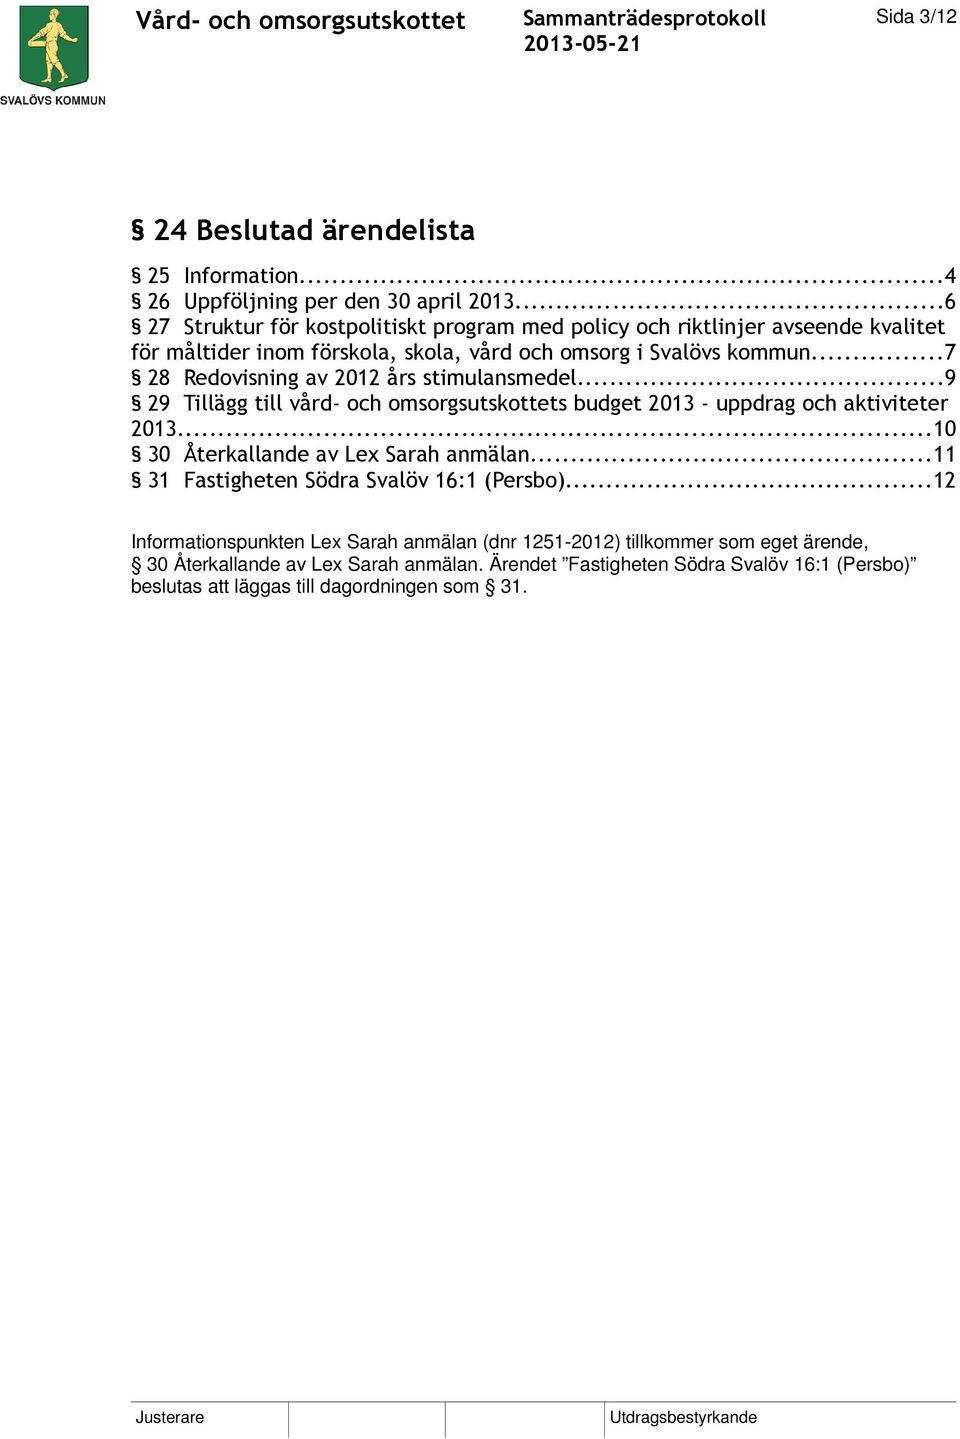 ..7 28 Redovisning av 2012 års stimulansmedel...9 29 Tillägg till vård- och omsorgsutskottets budget 2013 - uppdrag och aktiviteter 2013.